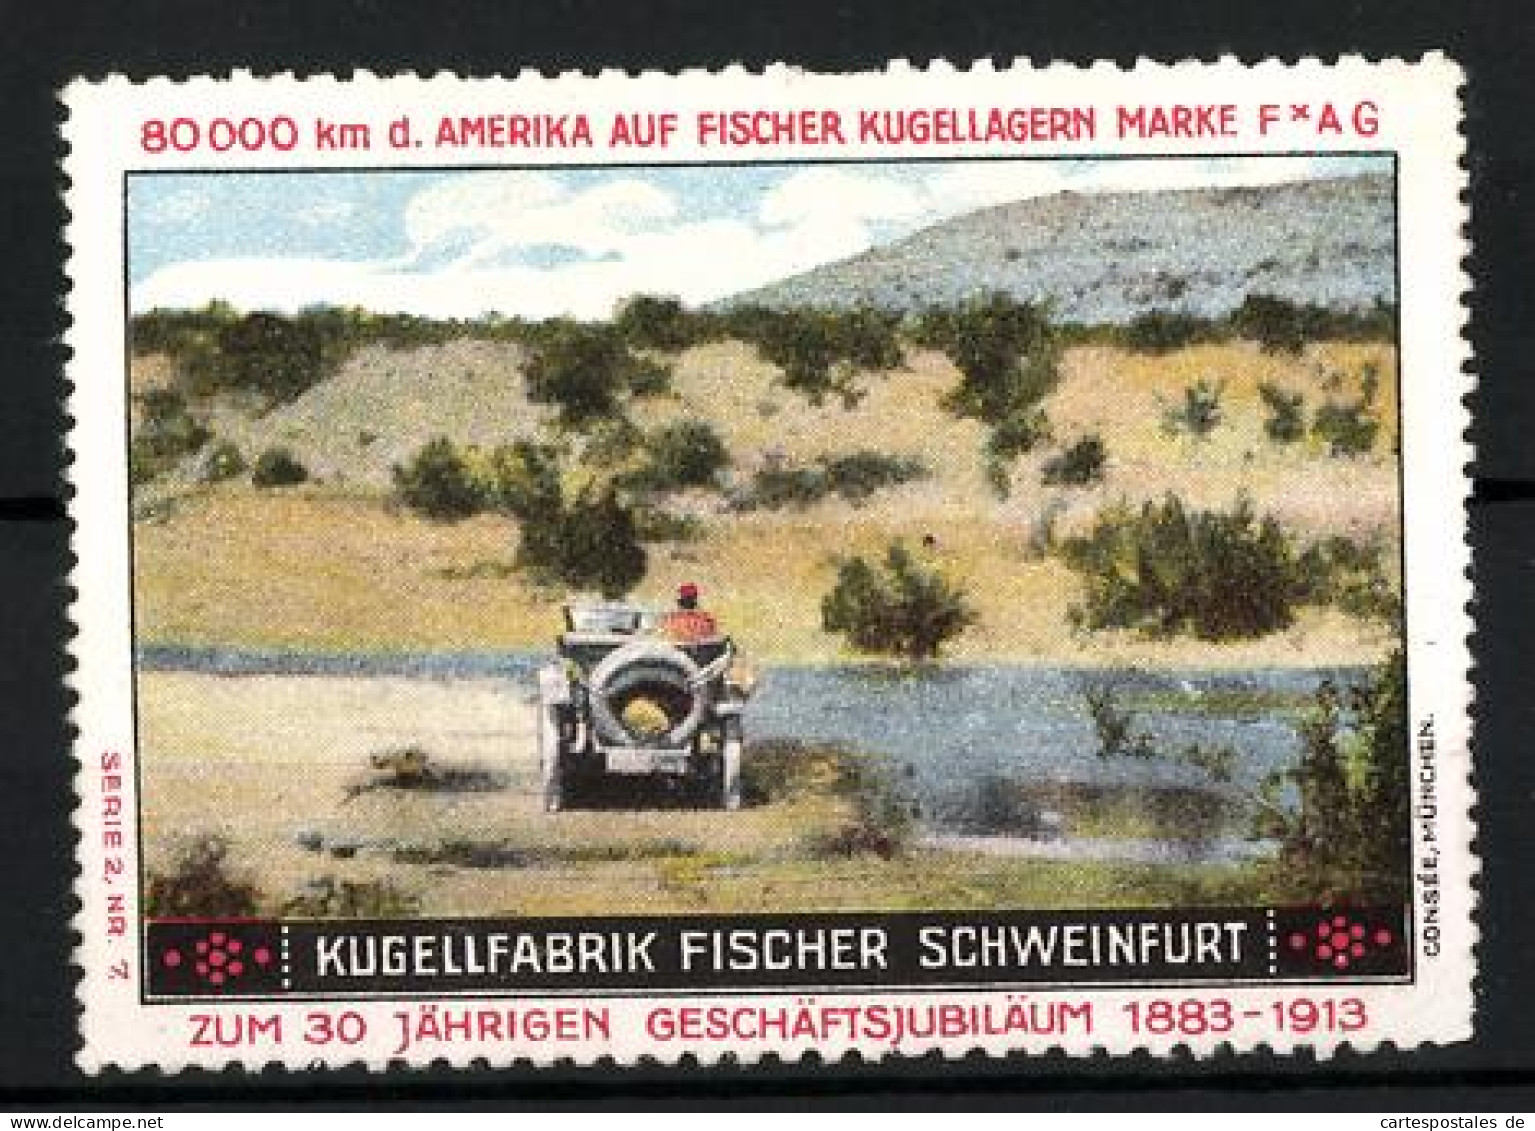 Reklamemarke Fischer Kugellager FAG, Kugellfabrik Fischer Schweinfurt, 30 Jähr. Geschäftsjubiläum 1883-1913, Auto  - Vignetten (Erinnophilie)